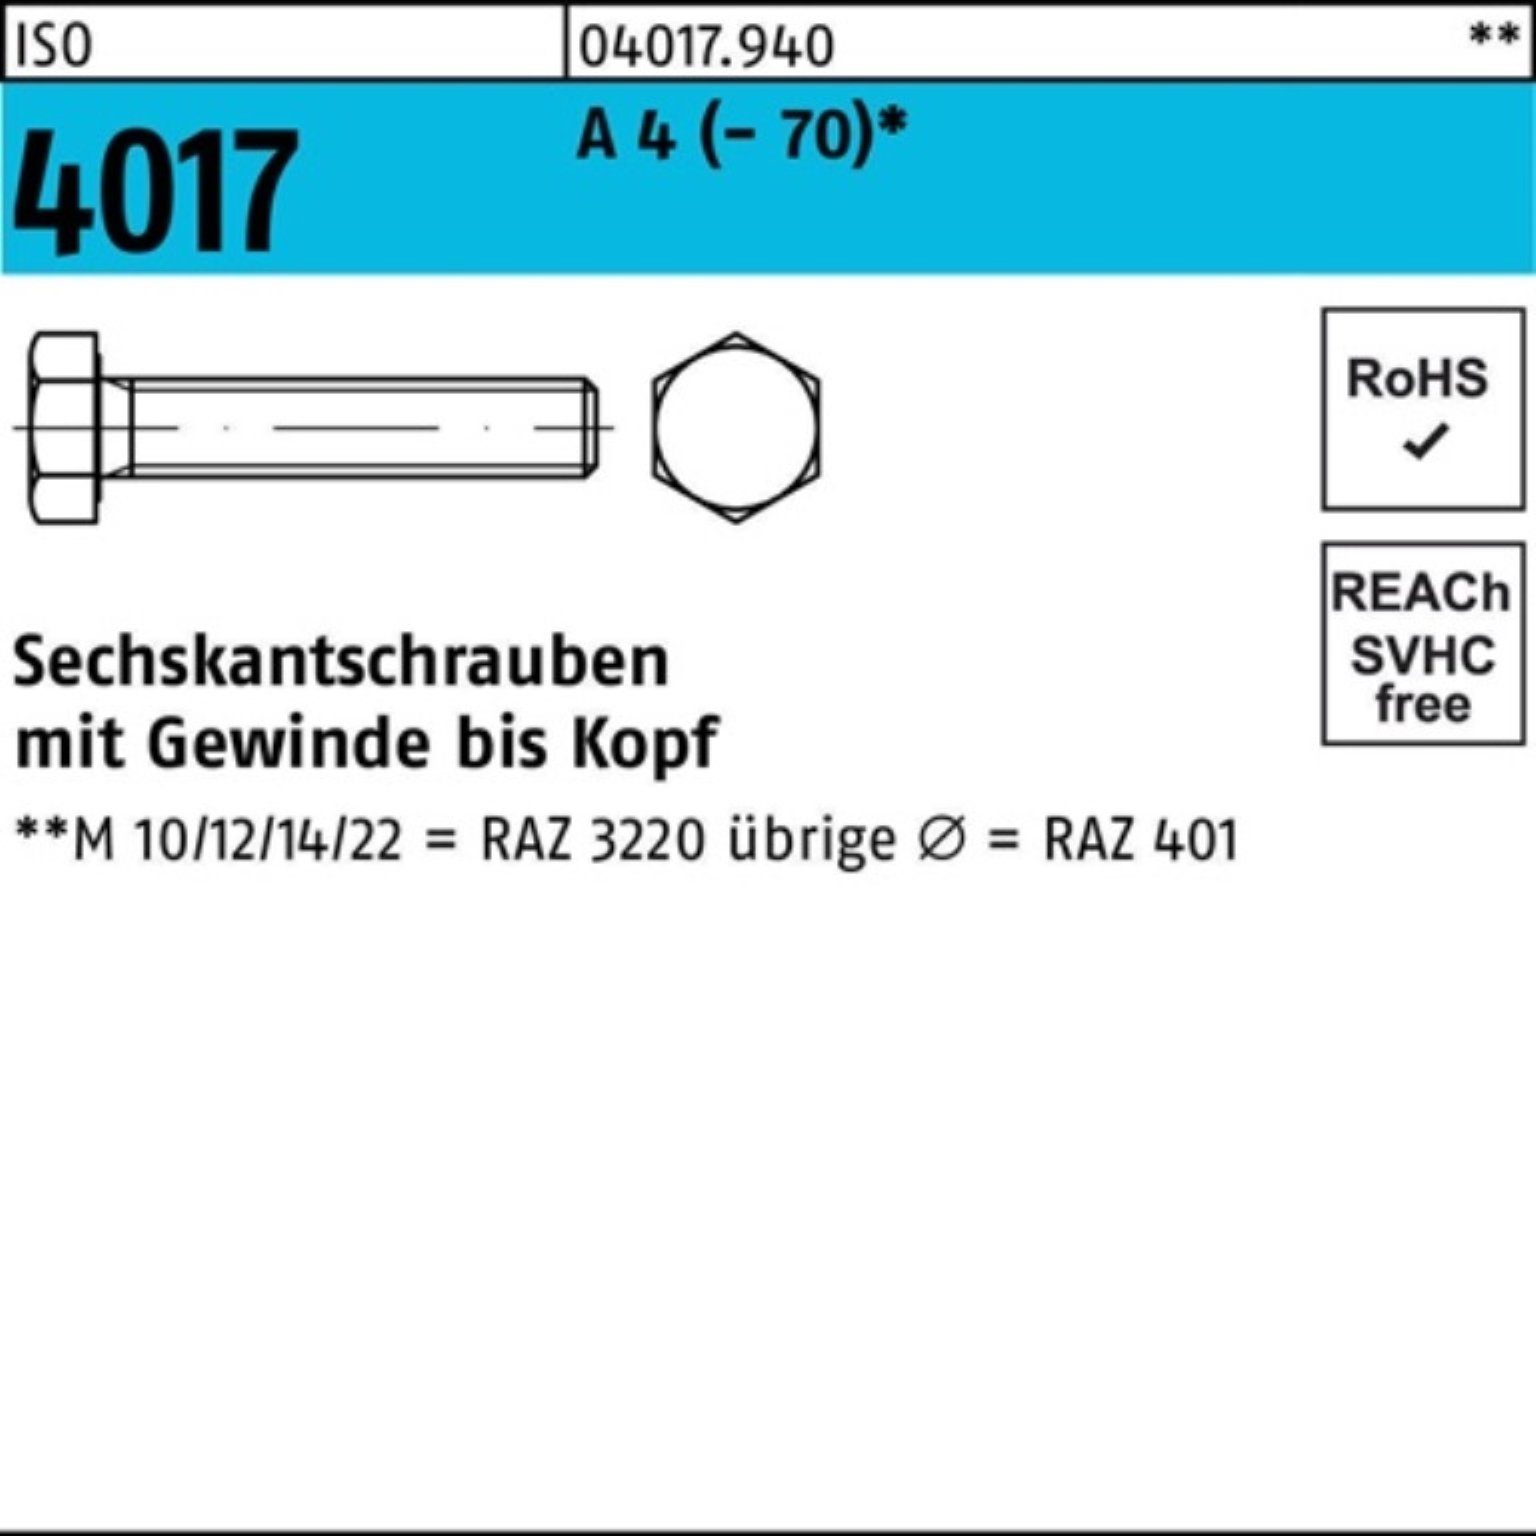 Bufab Sechskantschraube 100er Pack Sechskantschraube ISO 4017 VG M20x 130 A 4 (70) 1 Stück